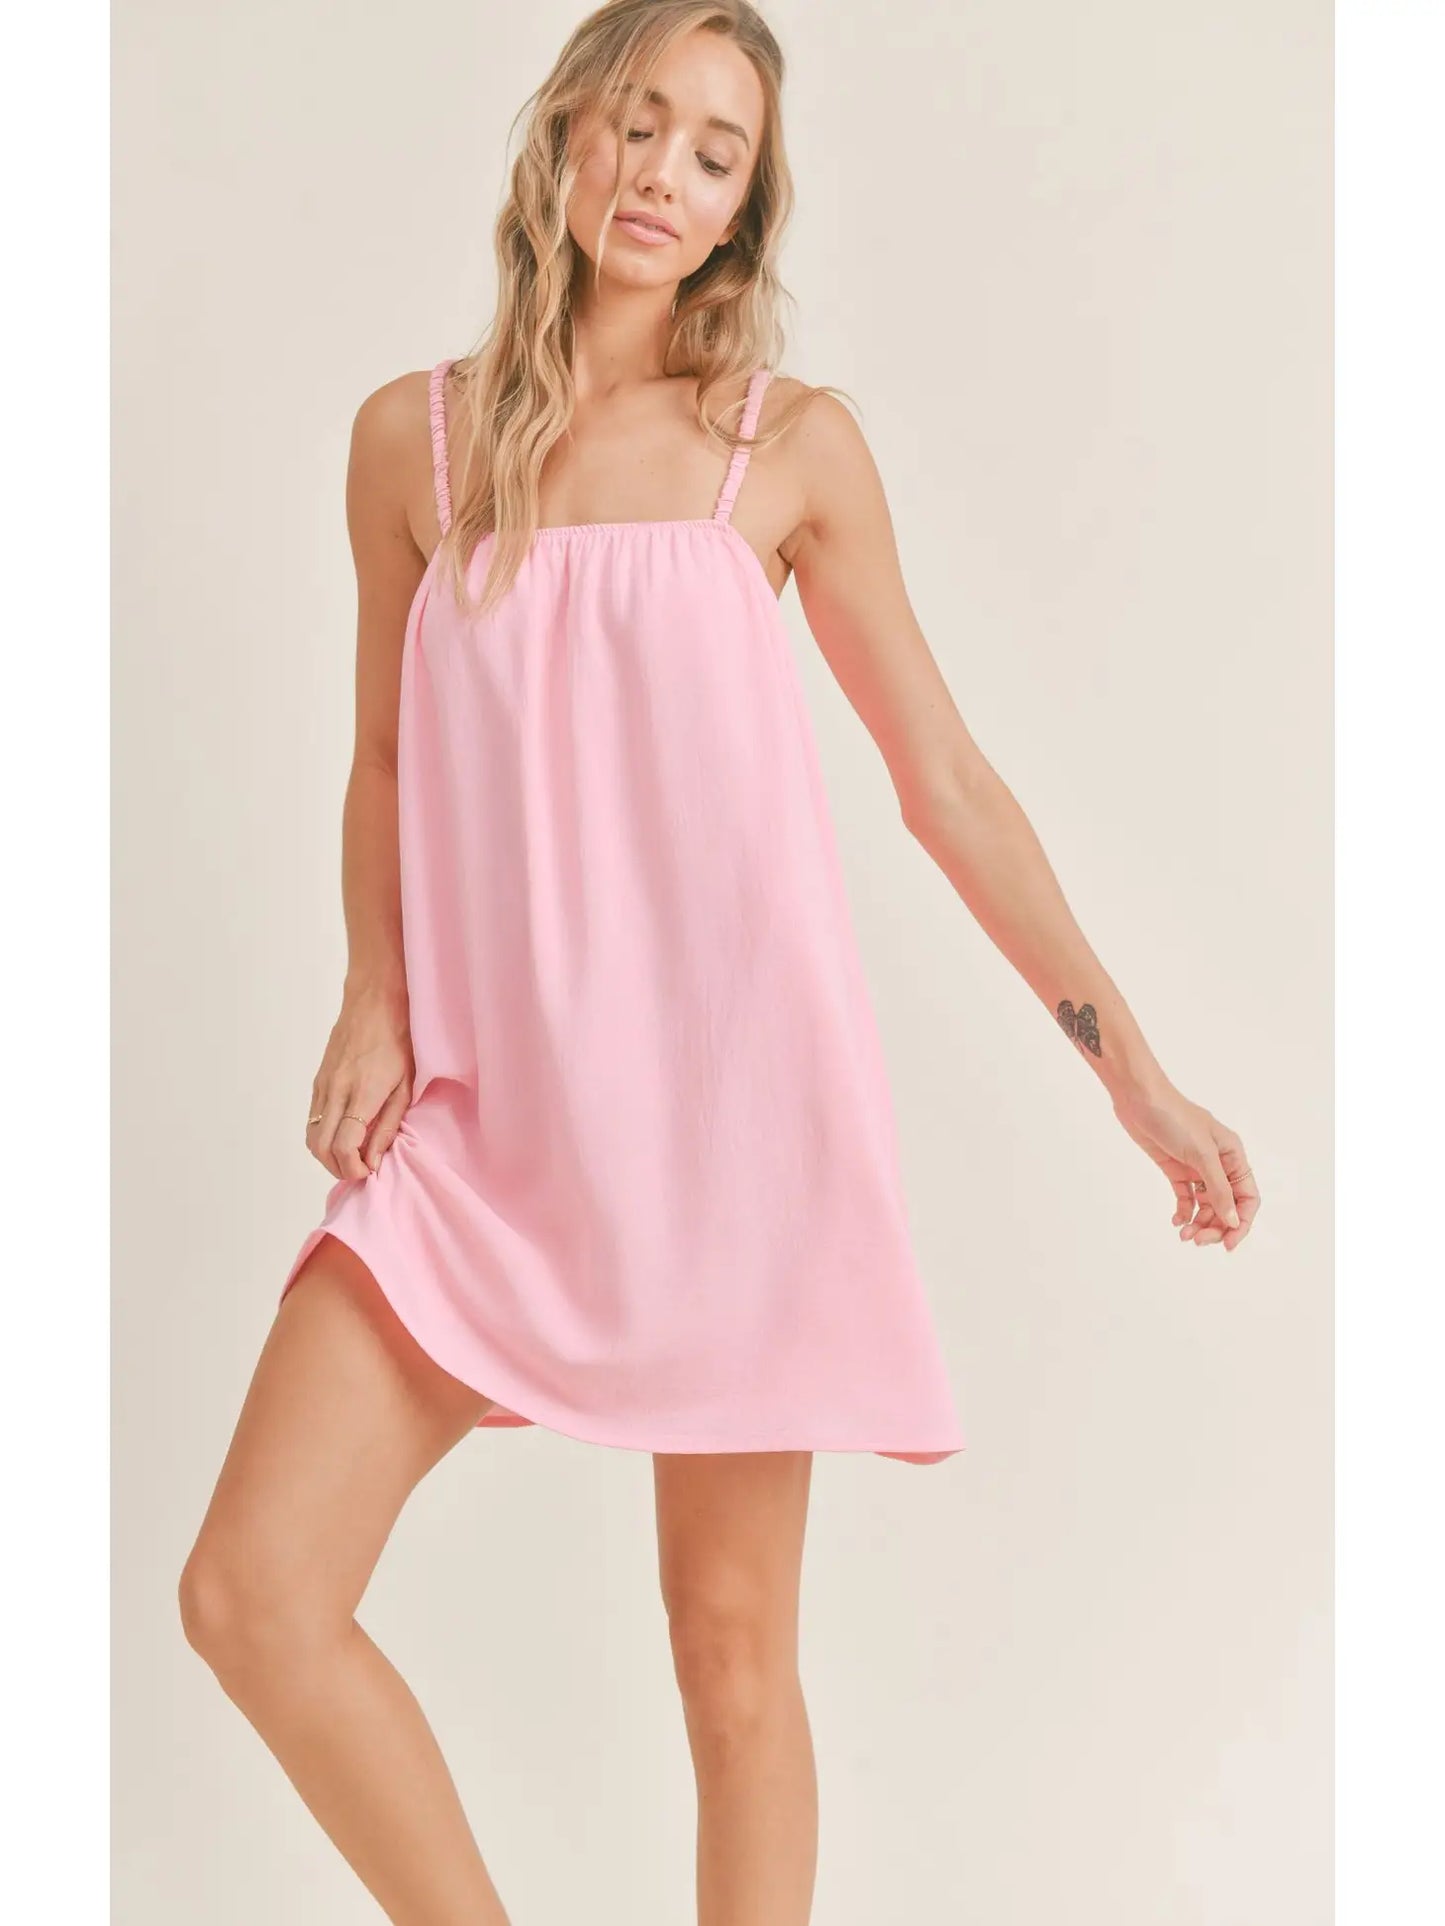 Posh Pink Mini Dress